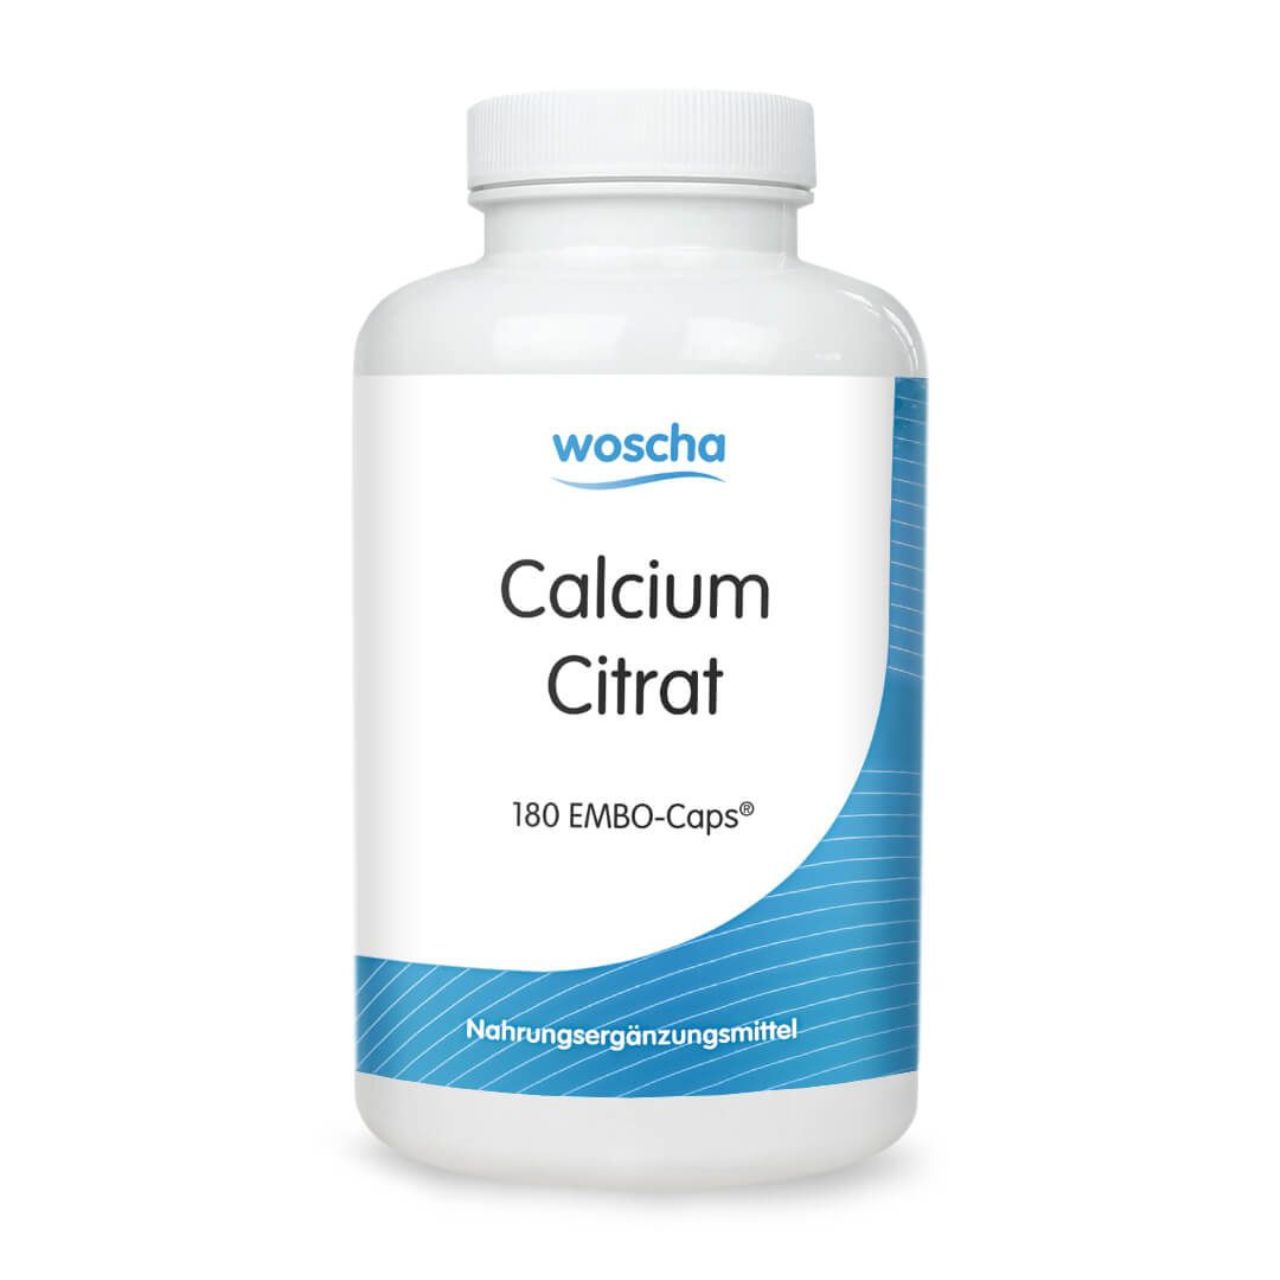 Woscha Calcium Citrat organisch von podo medi beinhaltet 180 Kapseln